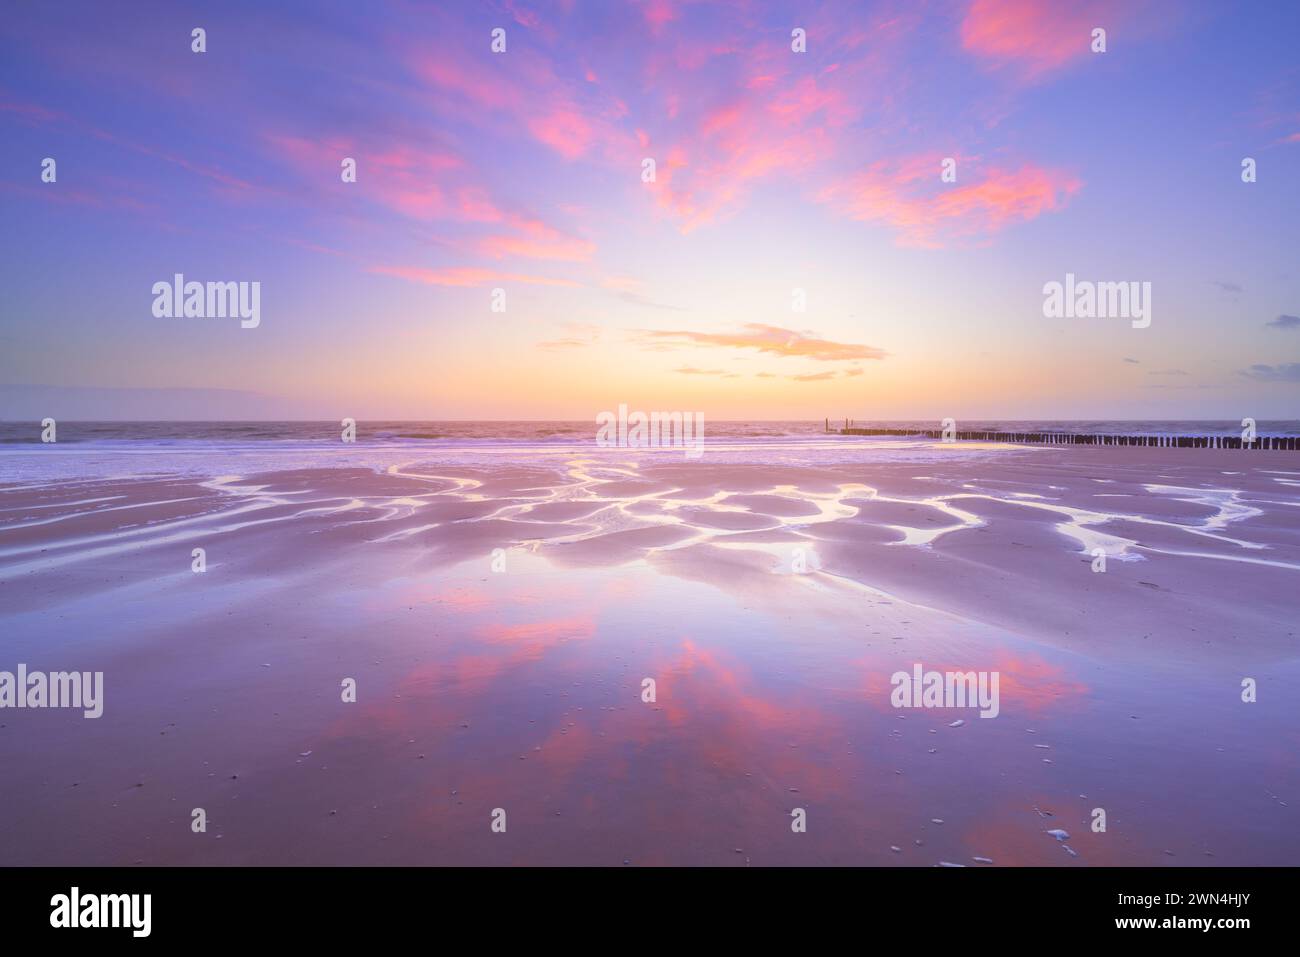 Un ciel plein de rouge coucher de soleil se reflète sur le sable humide de la plage de Zoutelande lors d’un coucher de soleil apaisant par une soirée calme et belle, l’eau coule. Banque D'Images